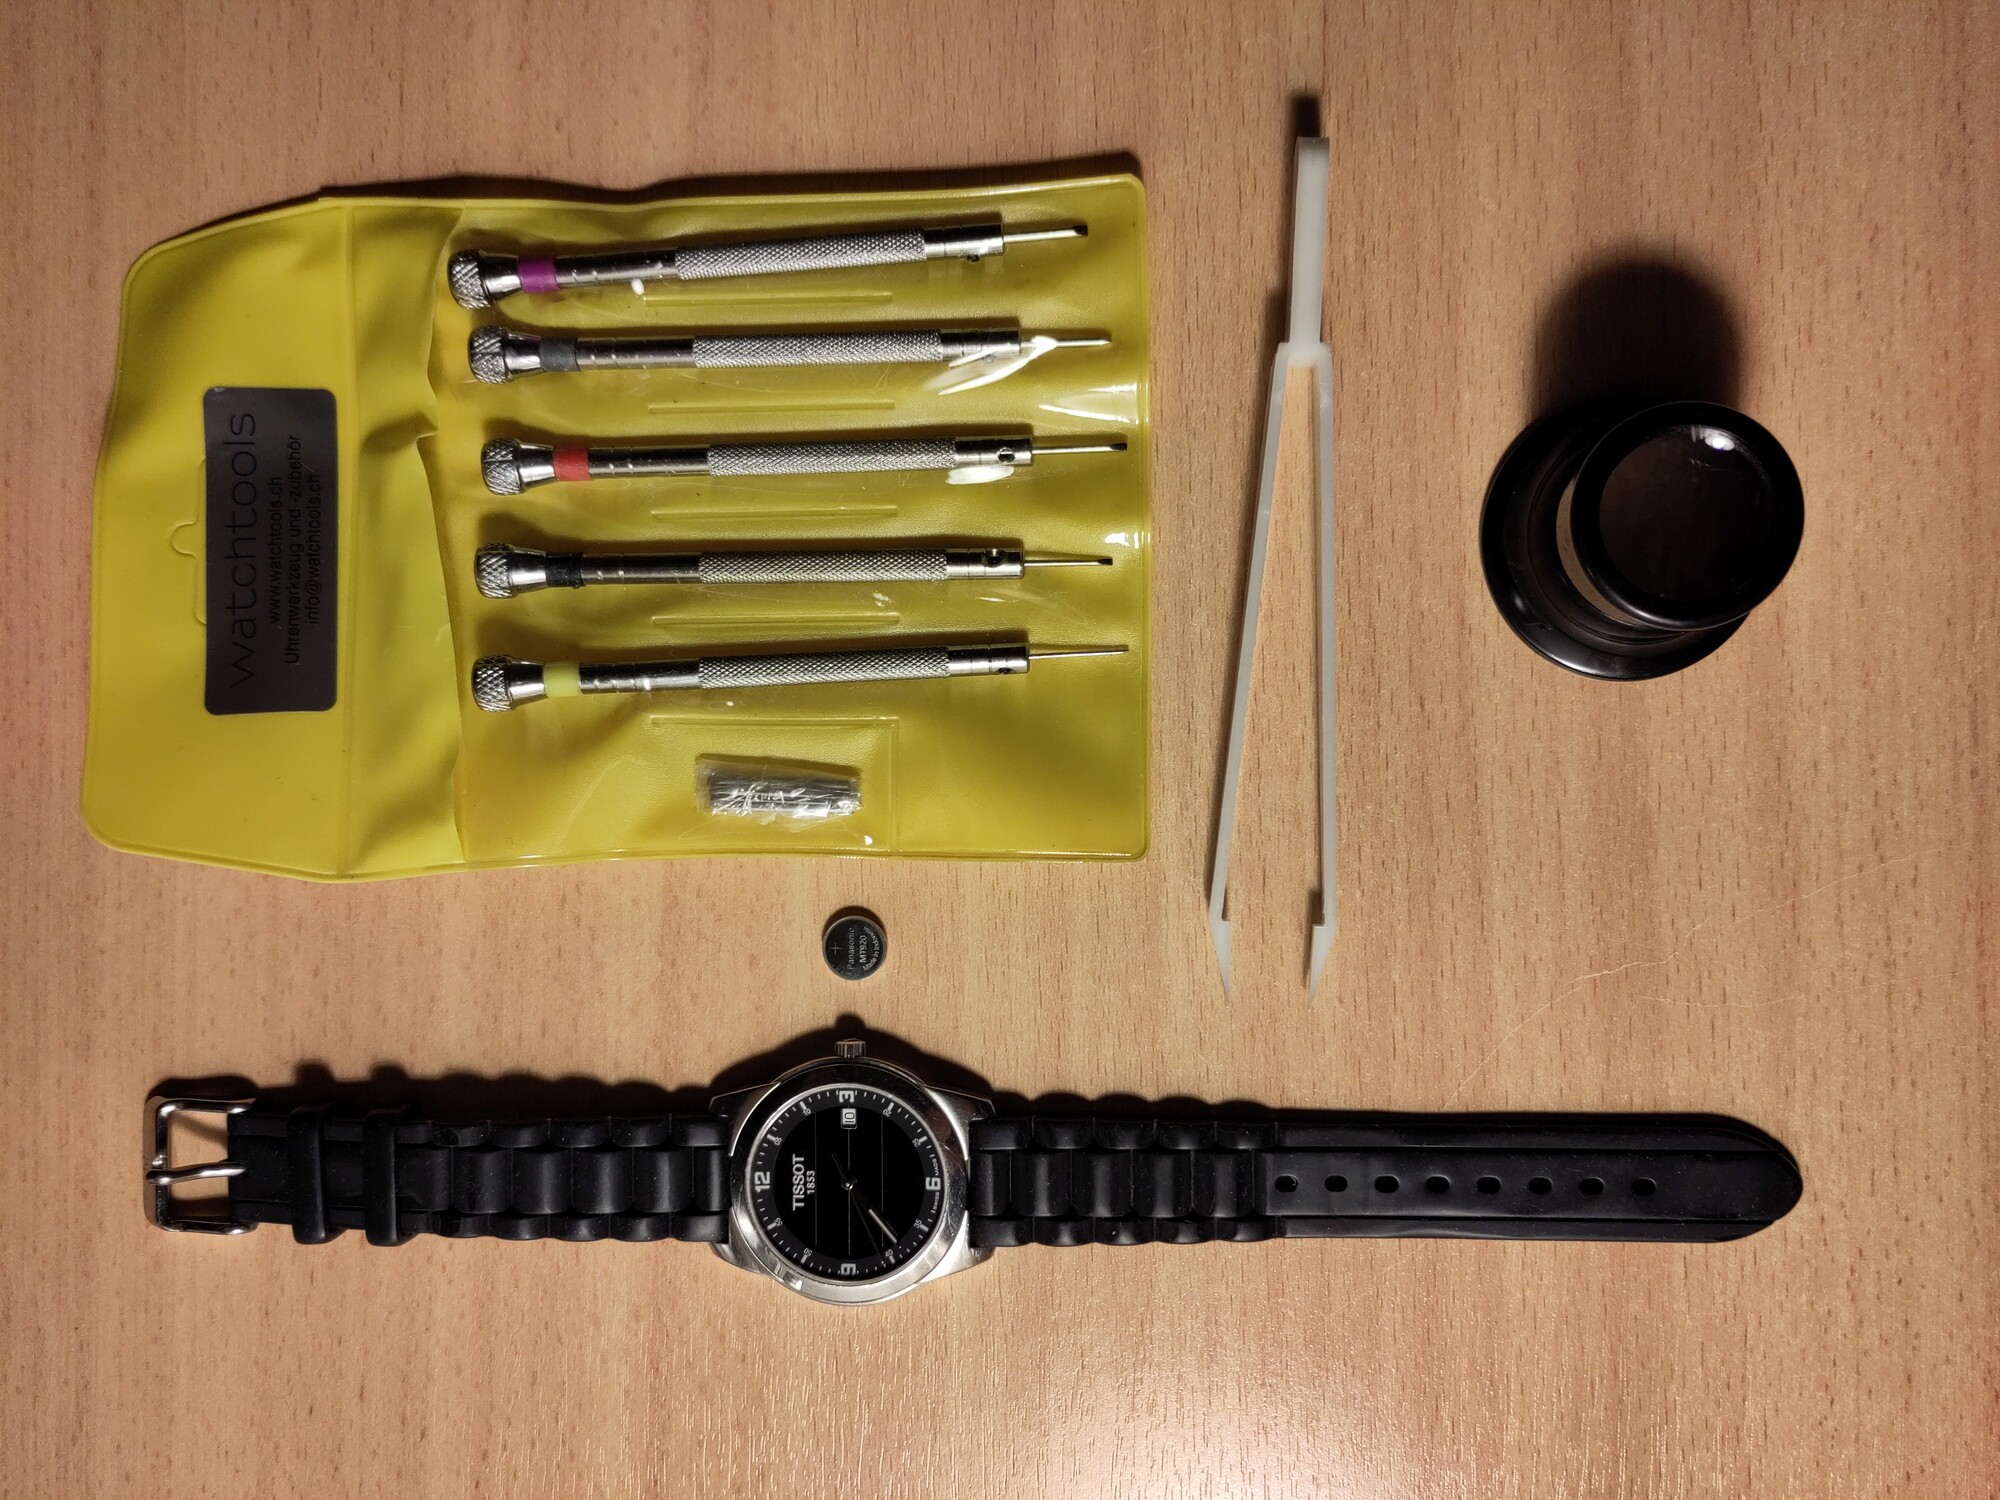 Eine Armbanduhr mit analogen Zeigern, daneben ein Akku in Knopfzellengrösse, Uhrmacherschraubenzieher, eine Pinzette und eine Uhrmacherlupe